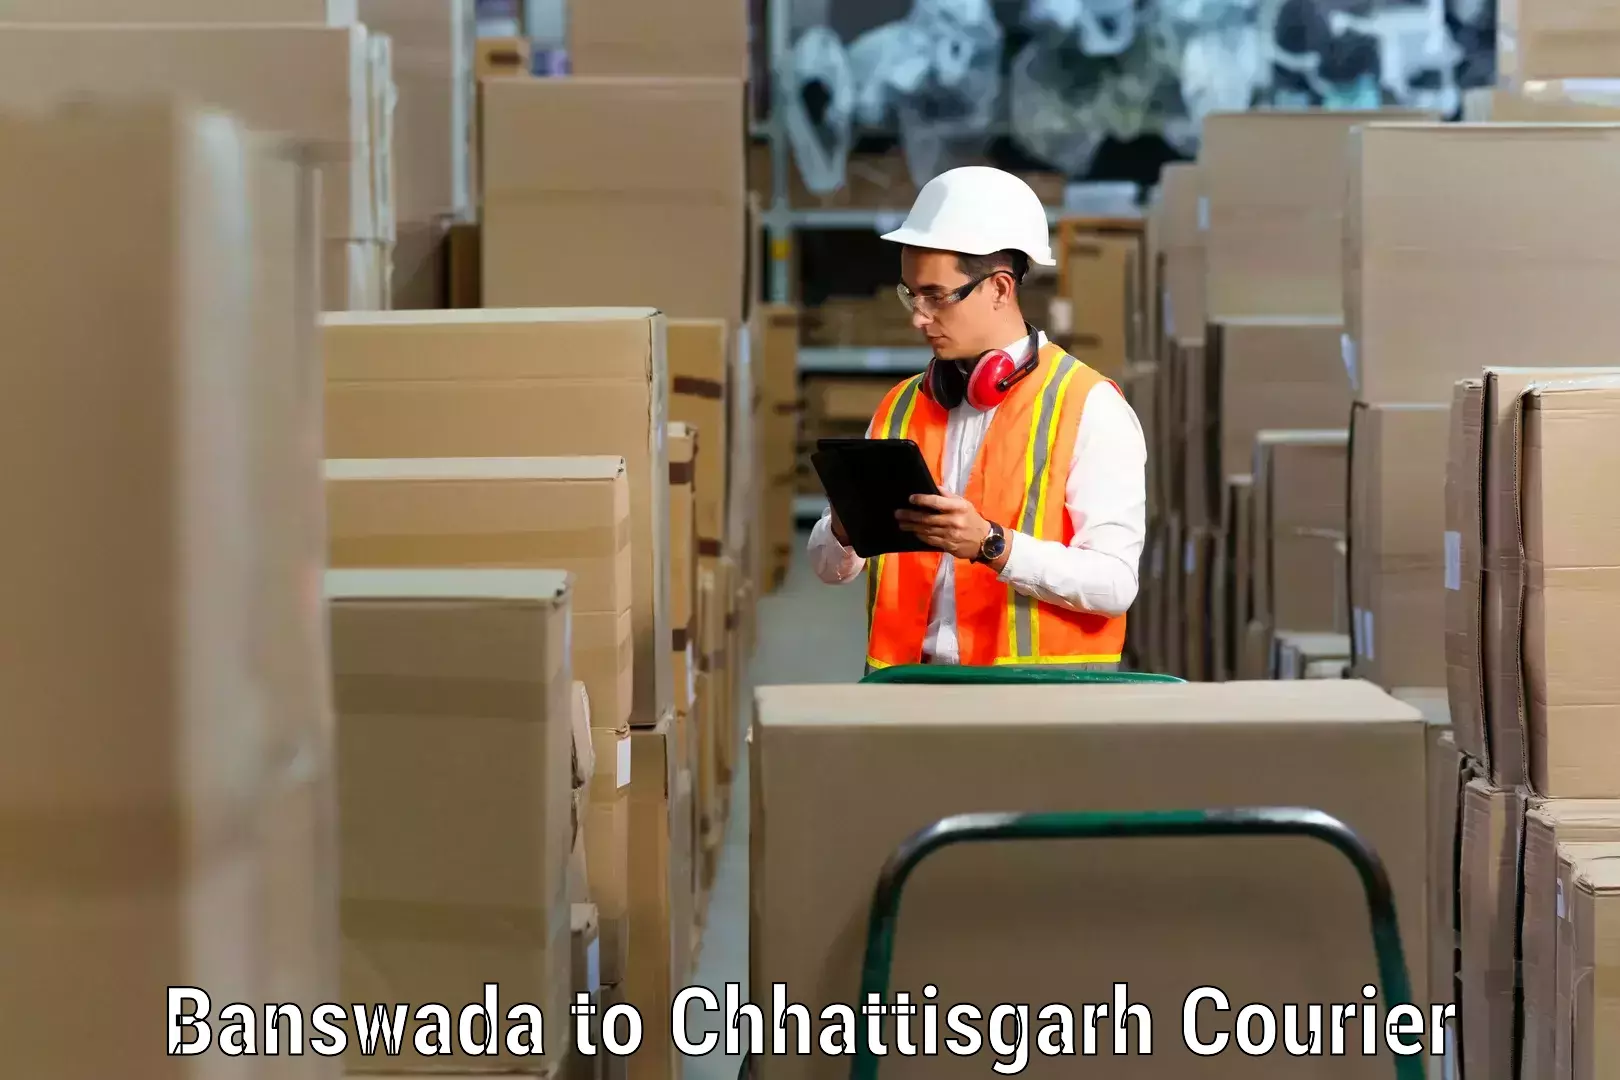 Moving and handling services Banswada to Pathalgaon